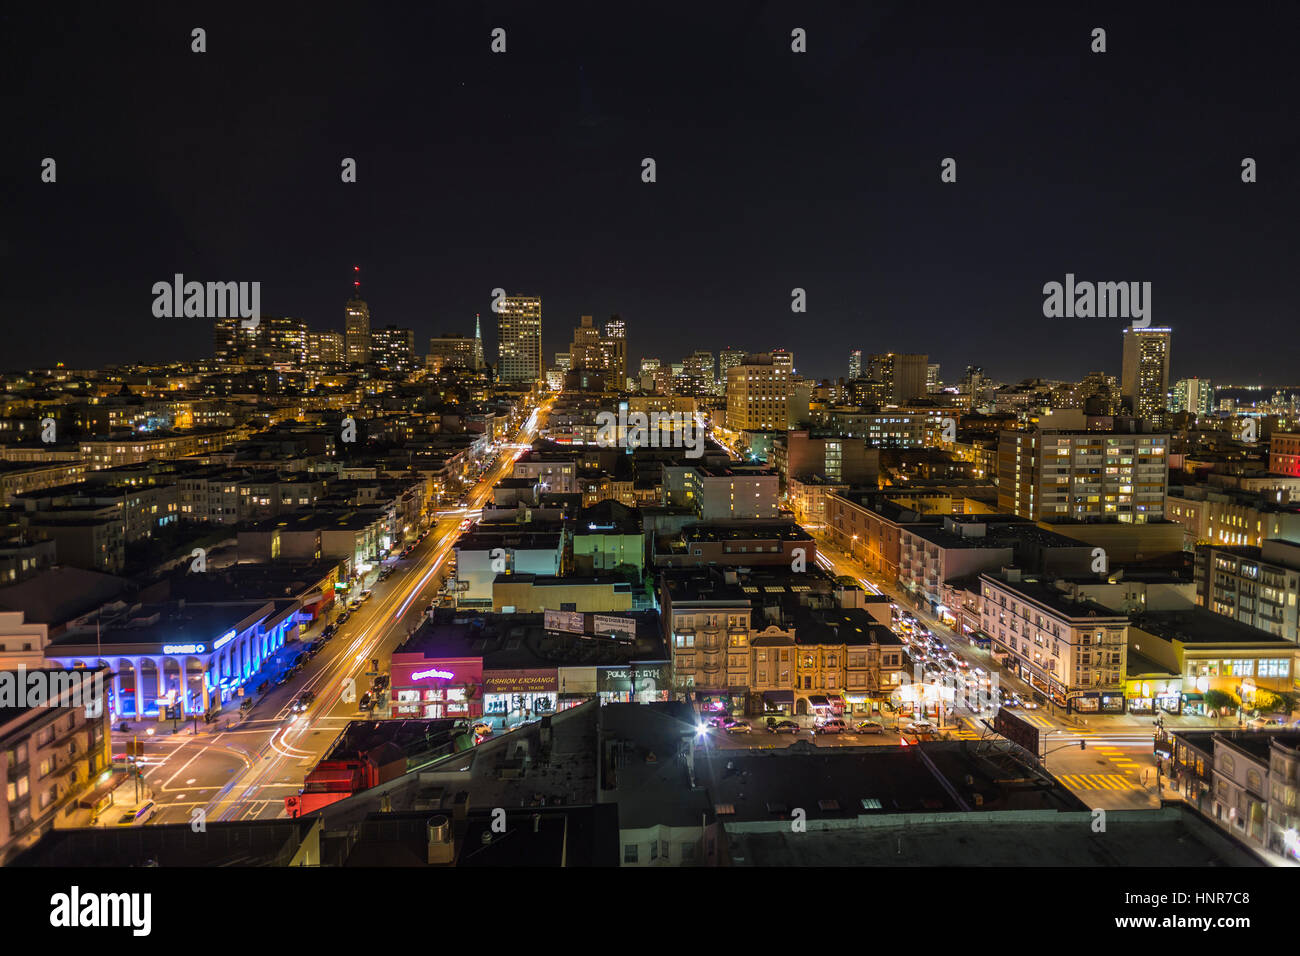 Vue de nuit vers l'éditorial de Nob Hill historique au coeur du centre-ville de San Francisco, en Californie. Banque D'Images